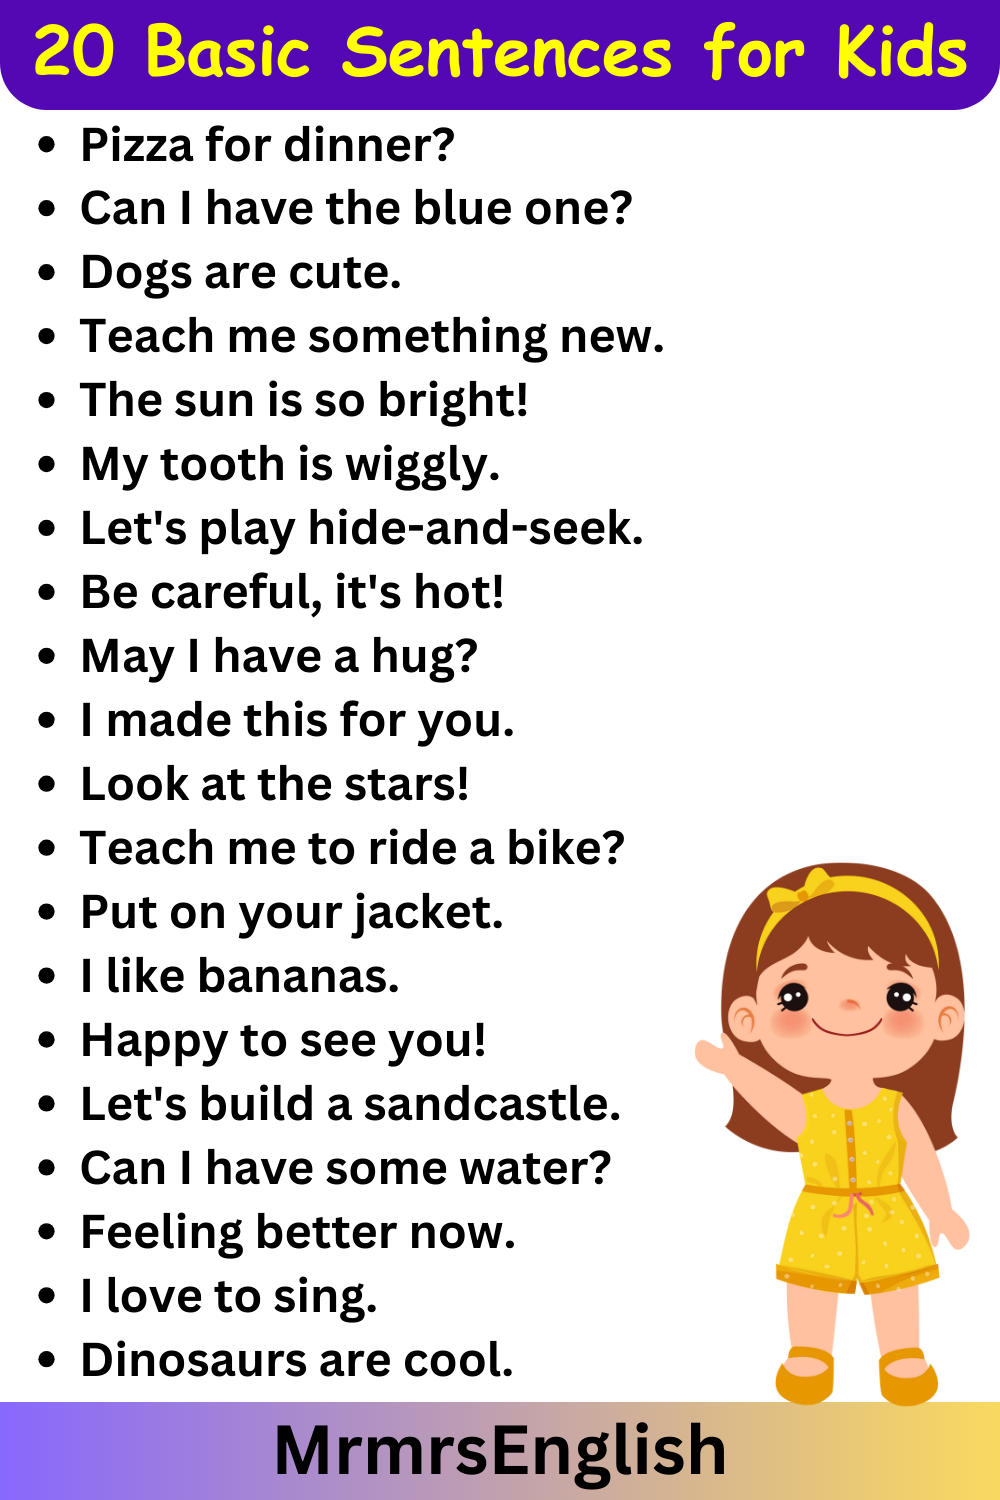 20 Basic Sentences for Kids